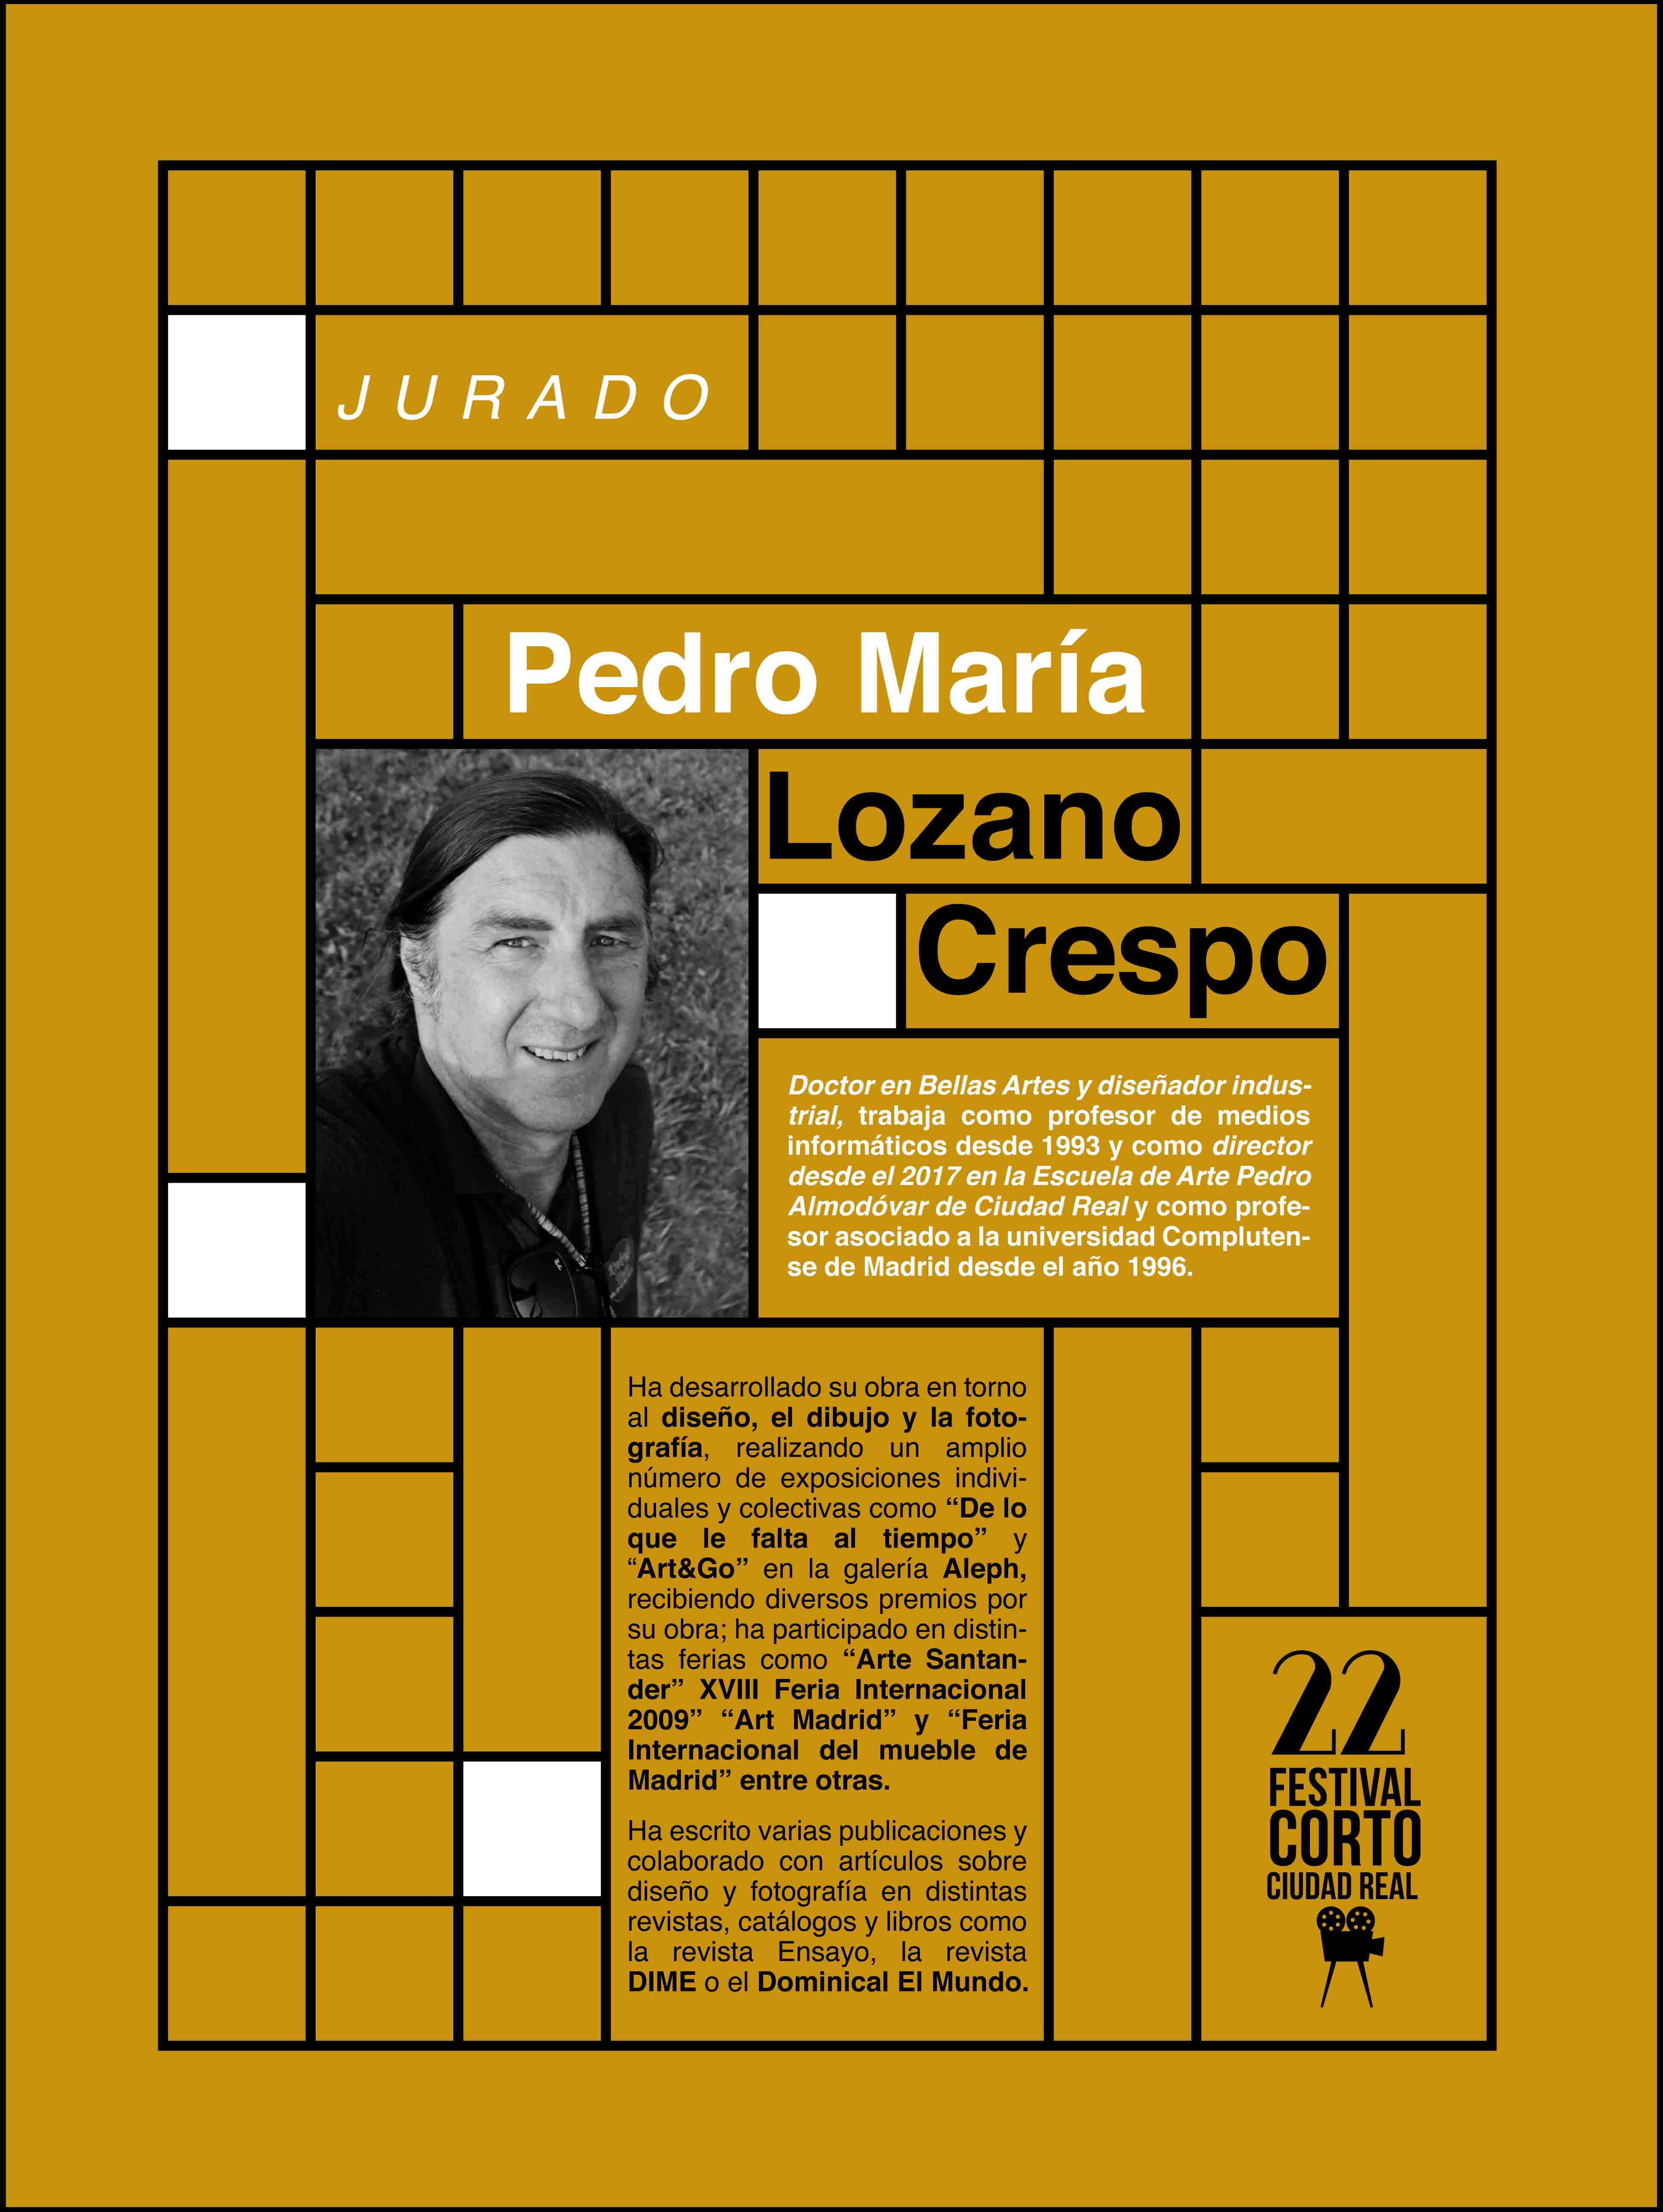 Jurado 2020 - Festival Corto Ciudad Real